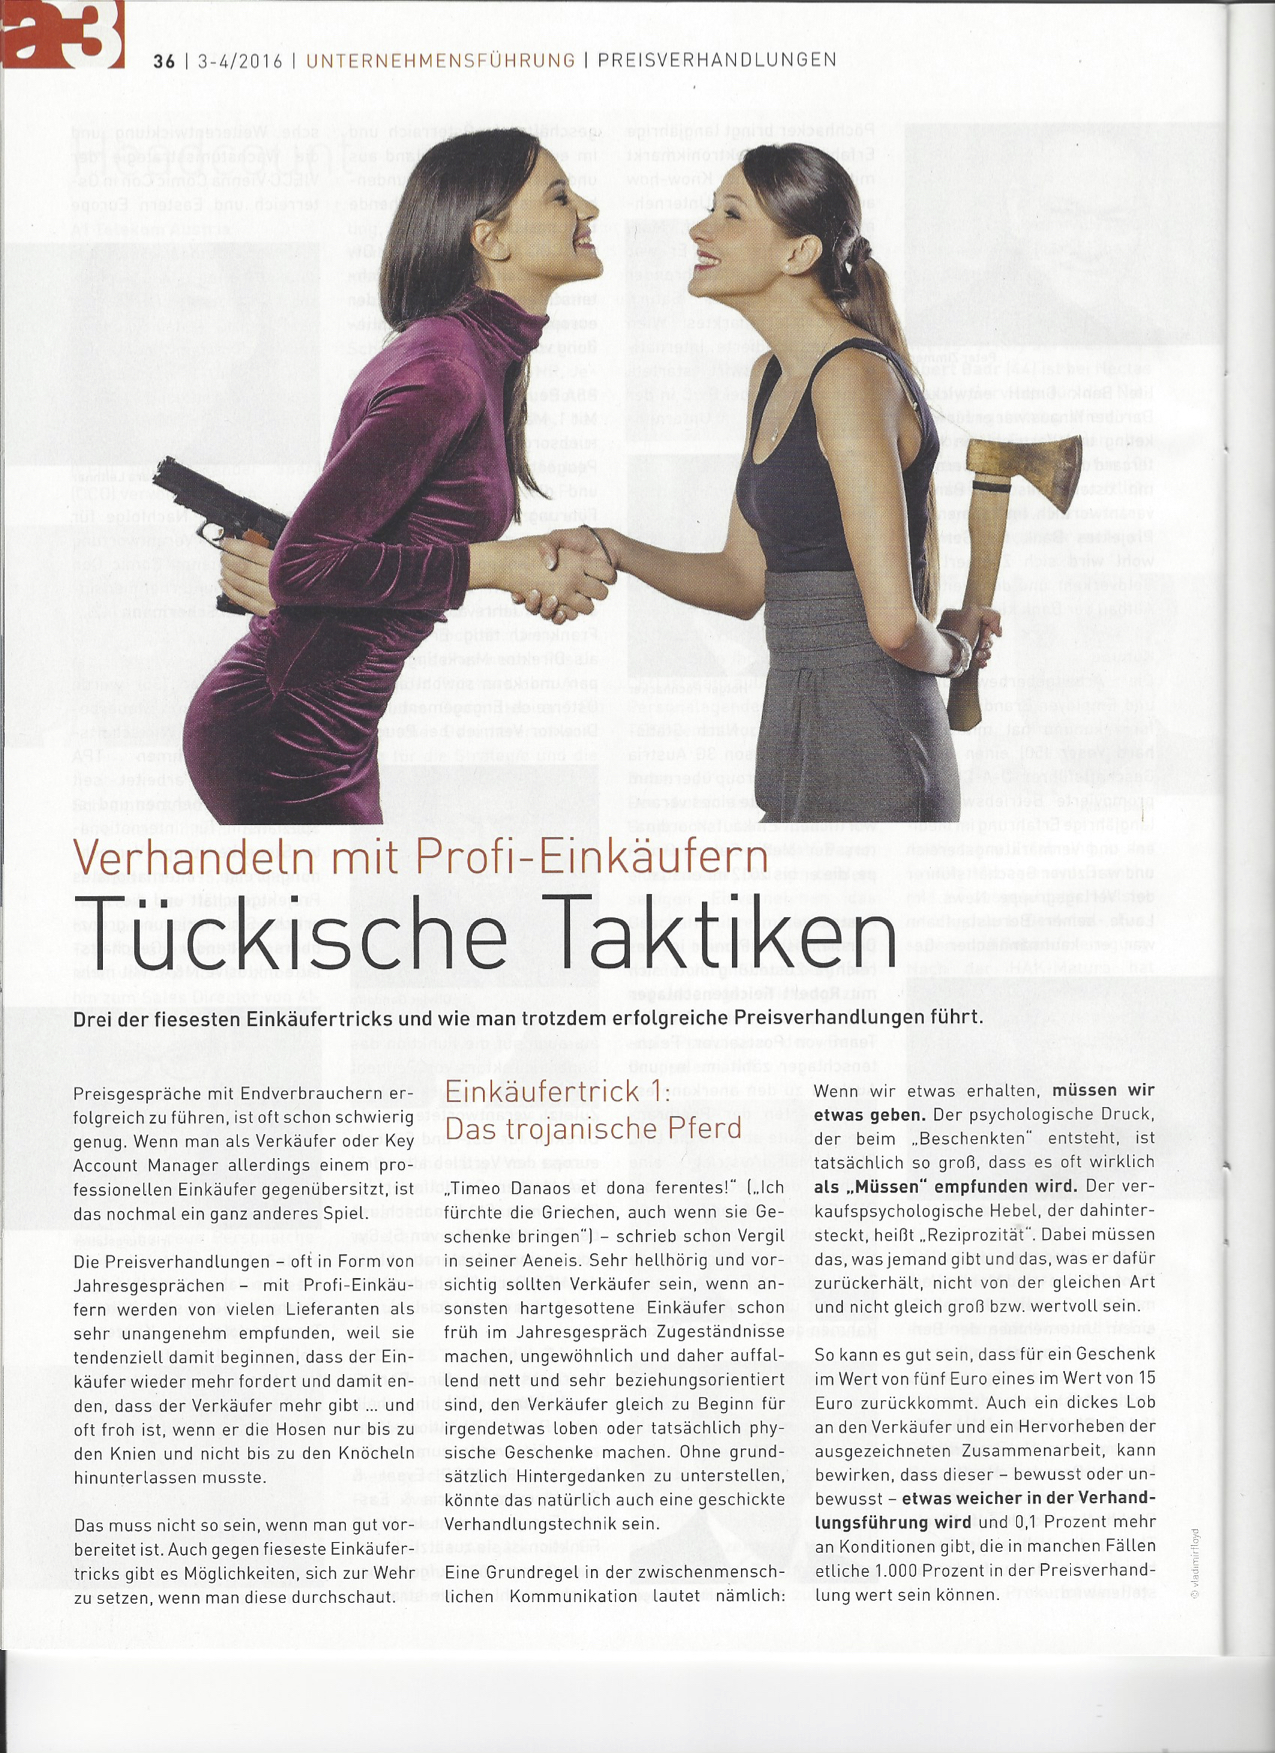 Tückische Taktiken Seite 1- a3 ECO Magazin 03/2016 - Roman Kmenta - Vortragsredner und Autor